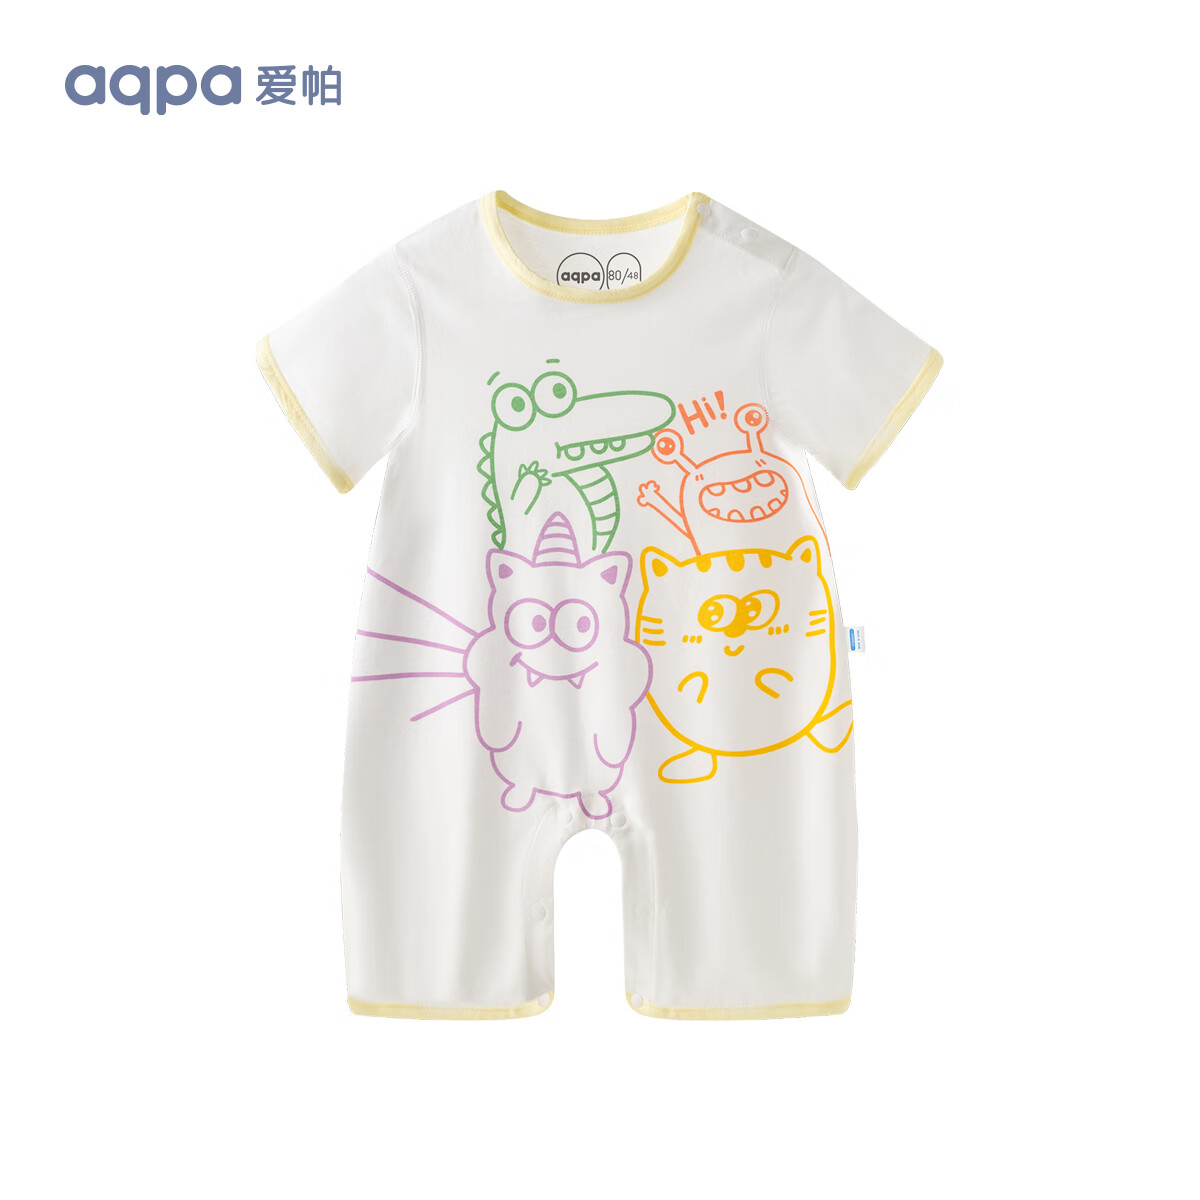 aqpa【135g新疆棉】婴儿纯棉连体衣 萌趣世界 80cm 42元